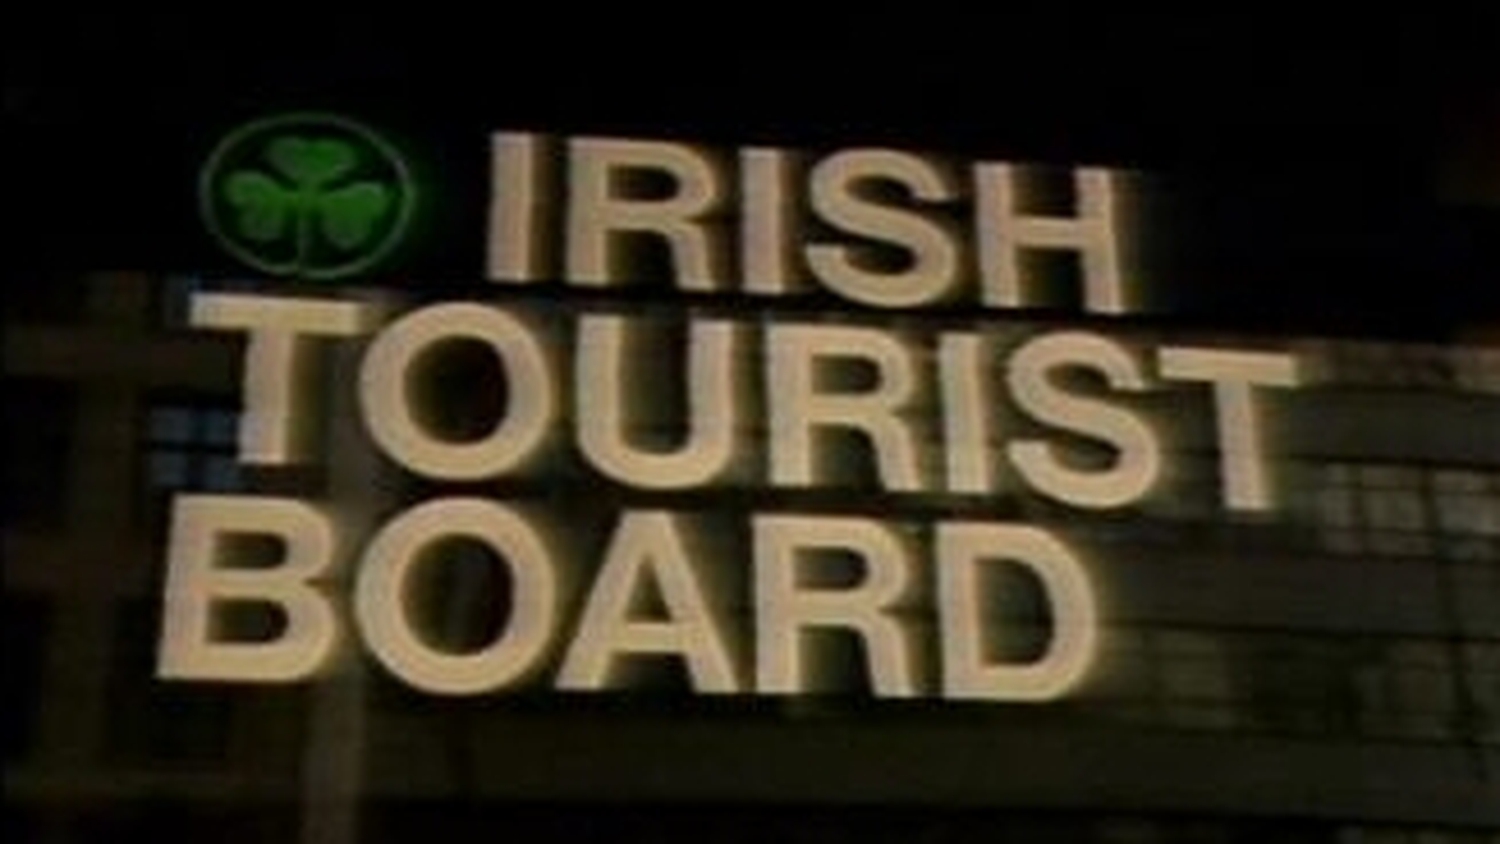 irish tourist board new york